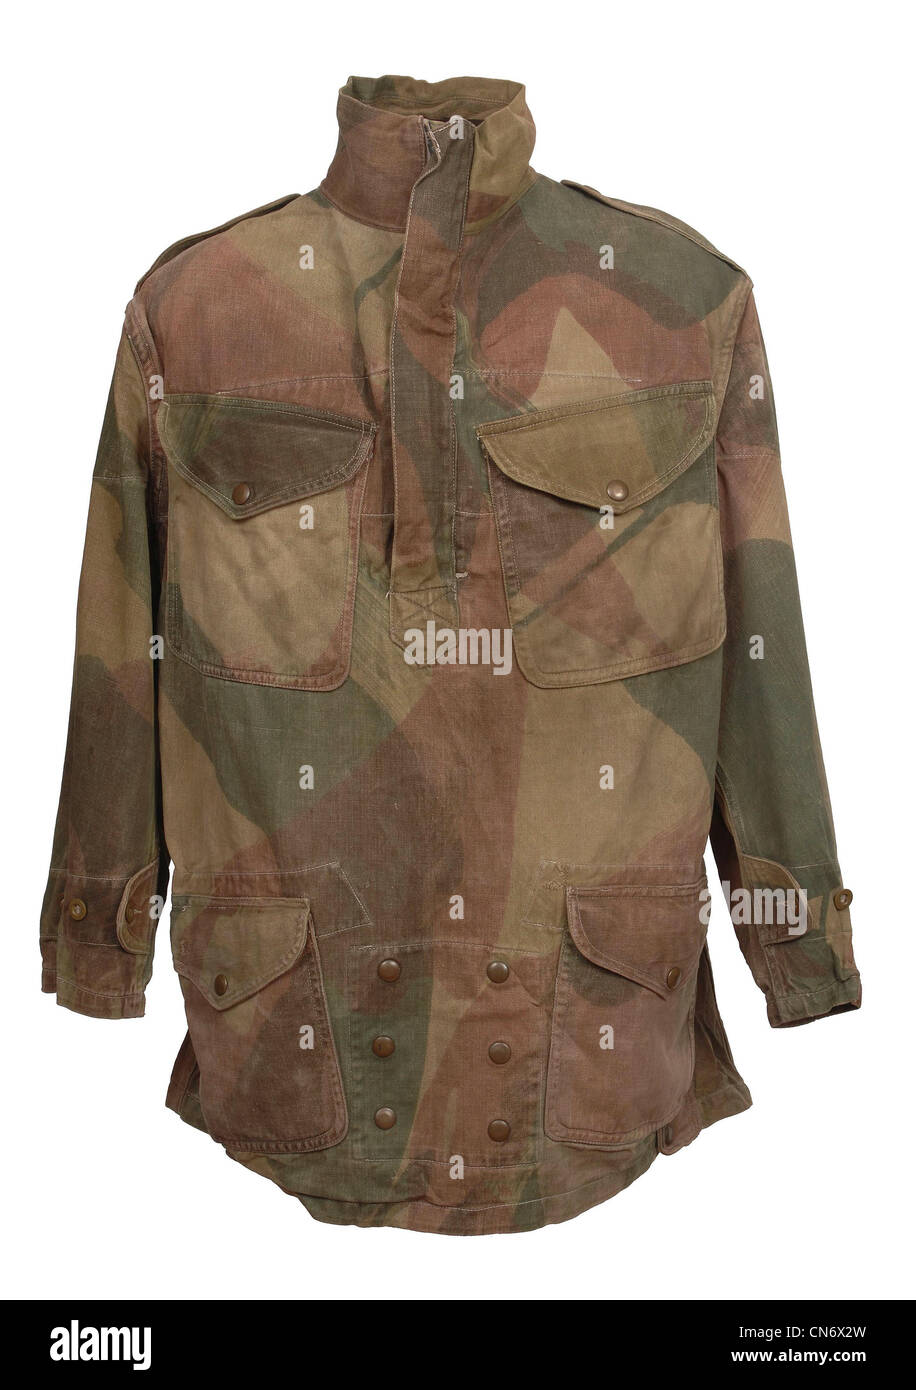 Abbigliamento camouflage come utilizzati dalle forze militari. WW11 paracadutista britannico Denison smock Foto Stock